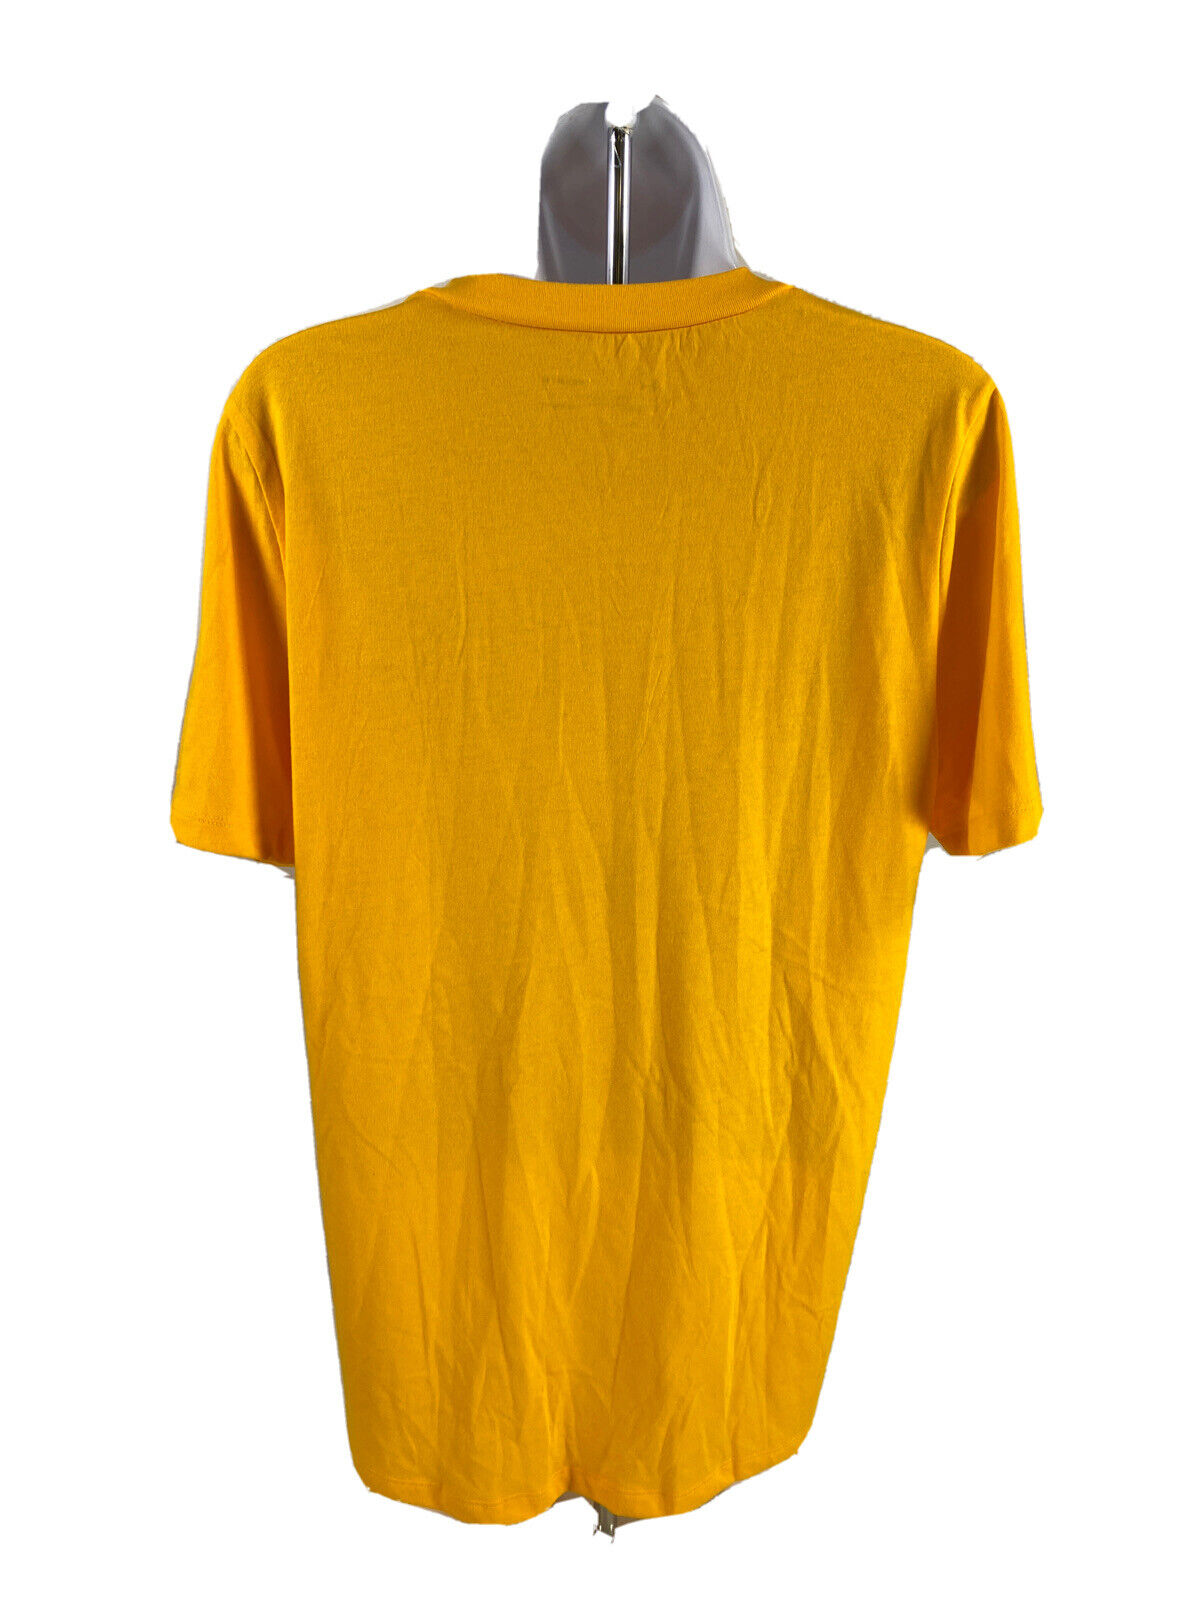 NEW Under Armour Women's Yellow Wichita State University T-Shirt - M